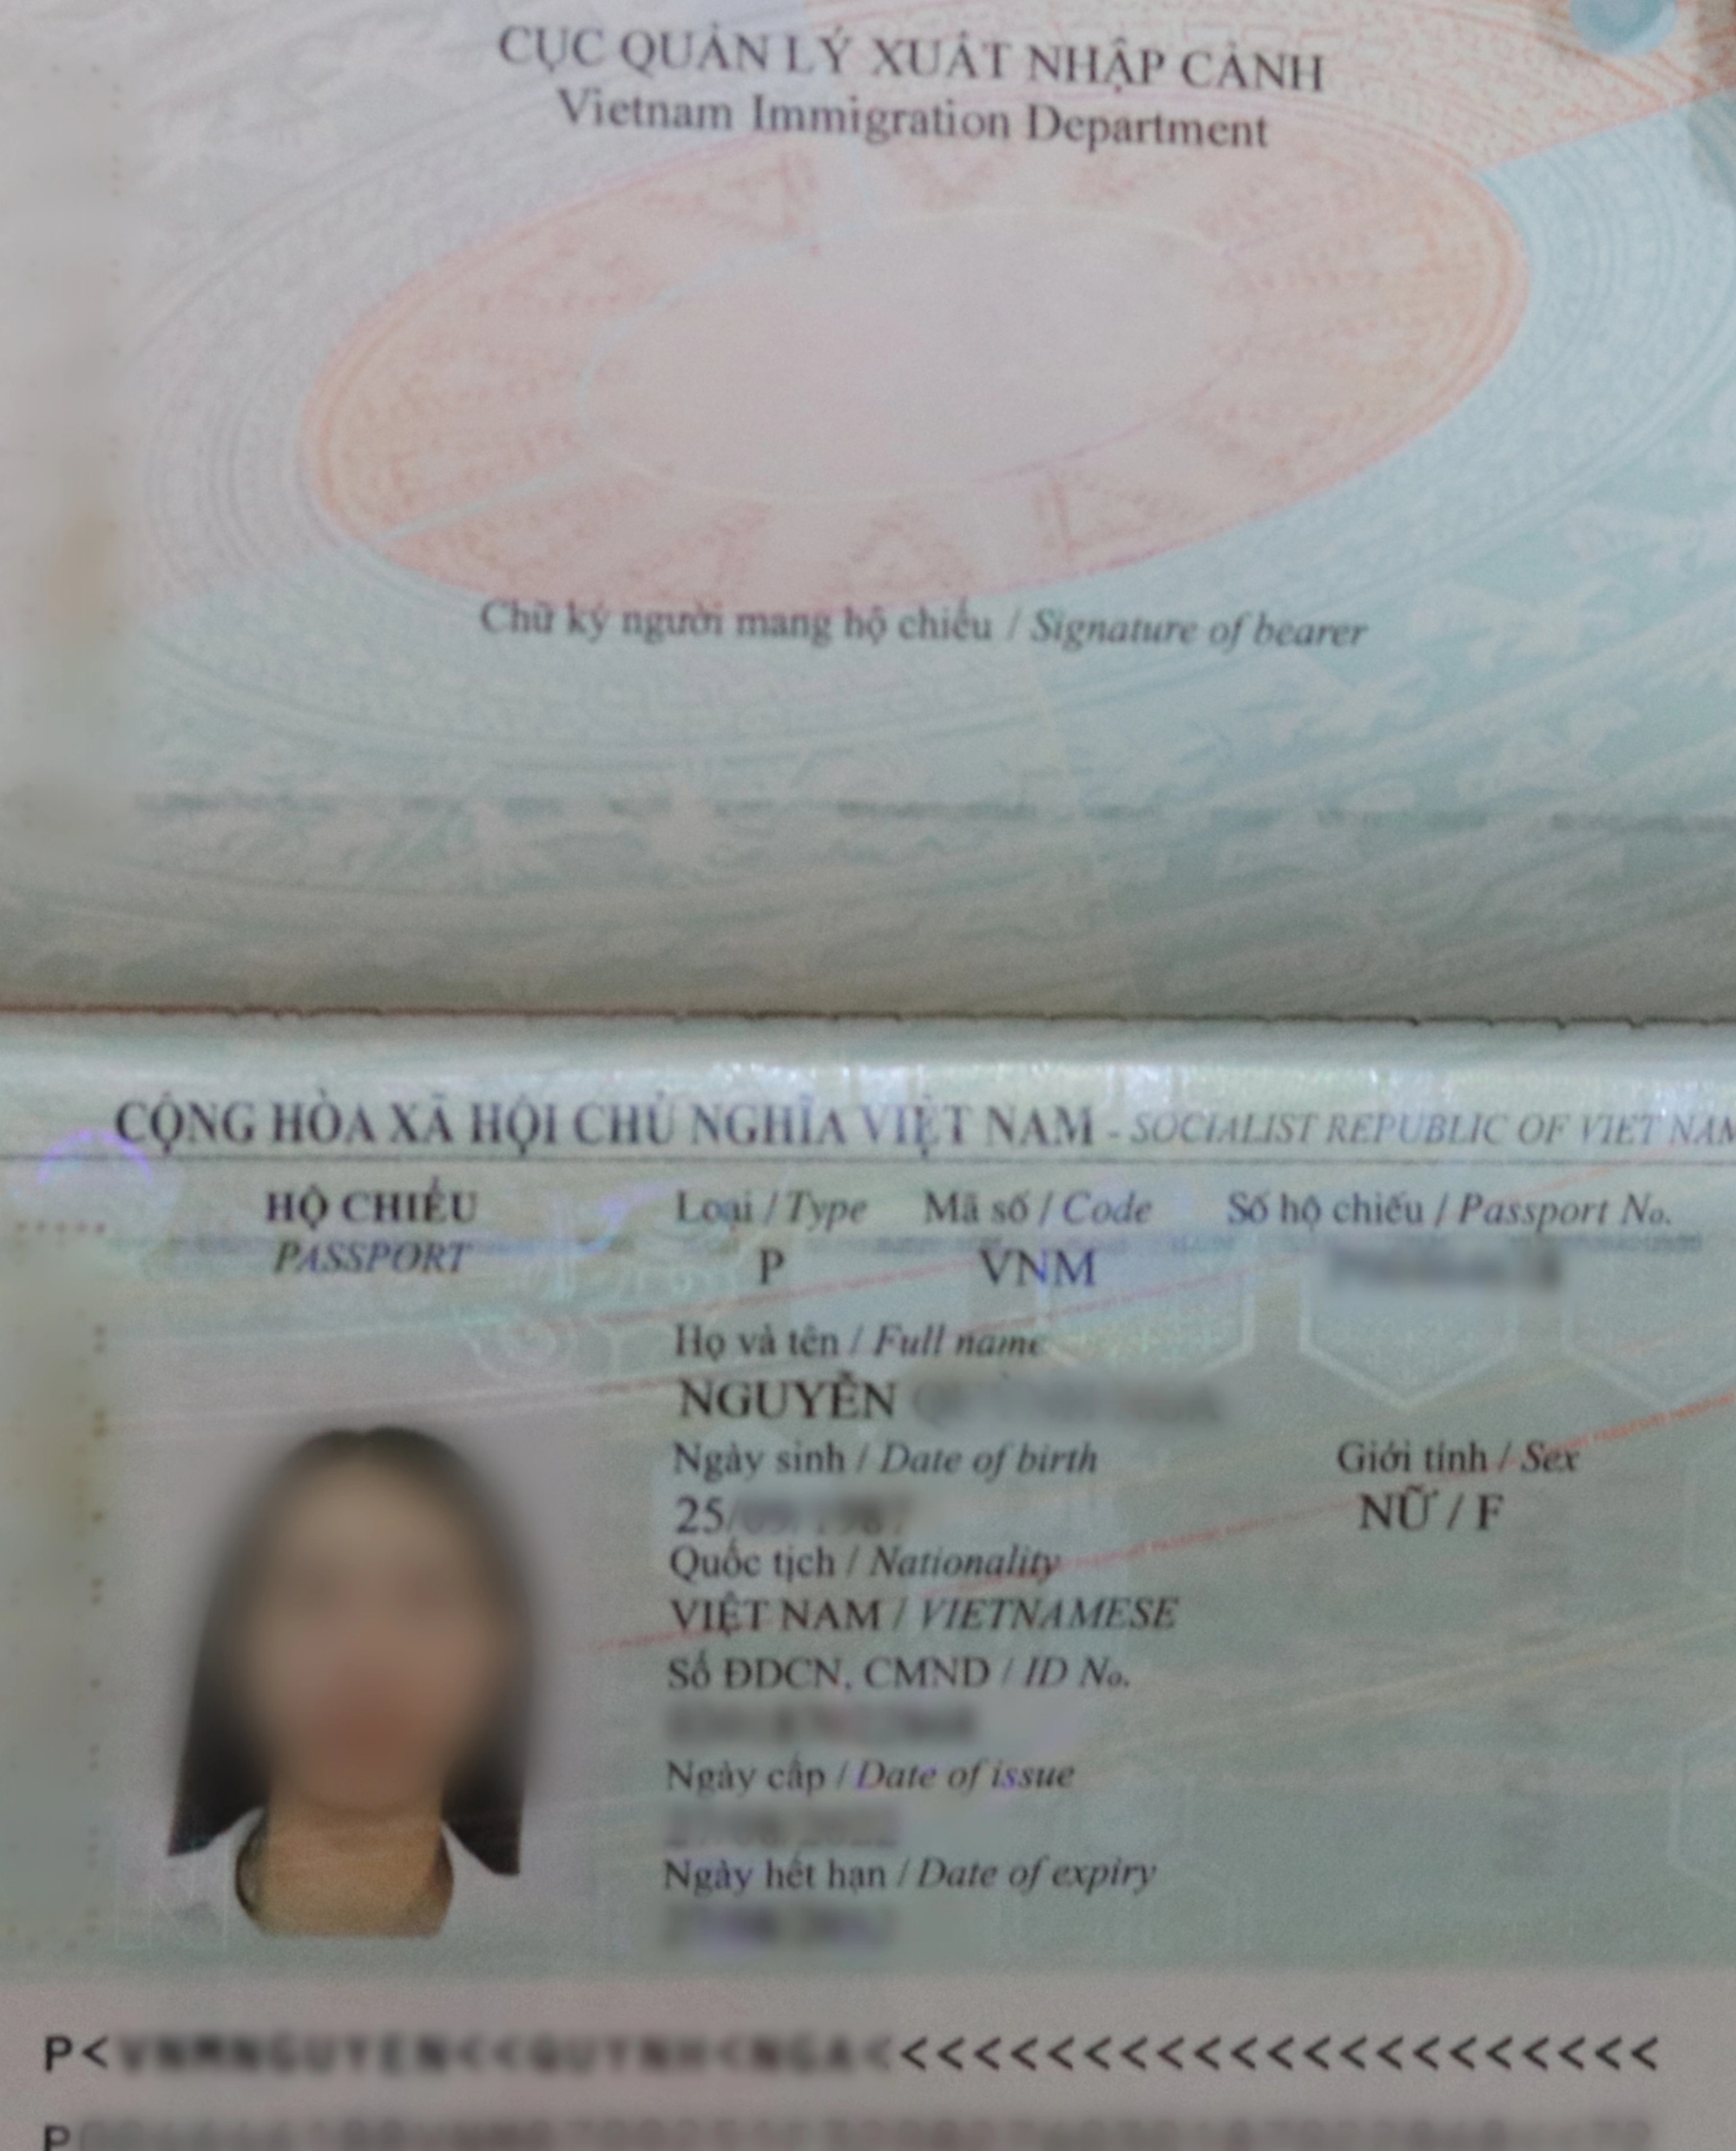 Khi nào được bổ sung nơi sinh vào hộ chiếu mẫu mới?